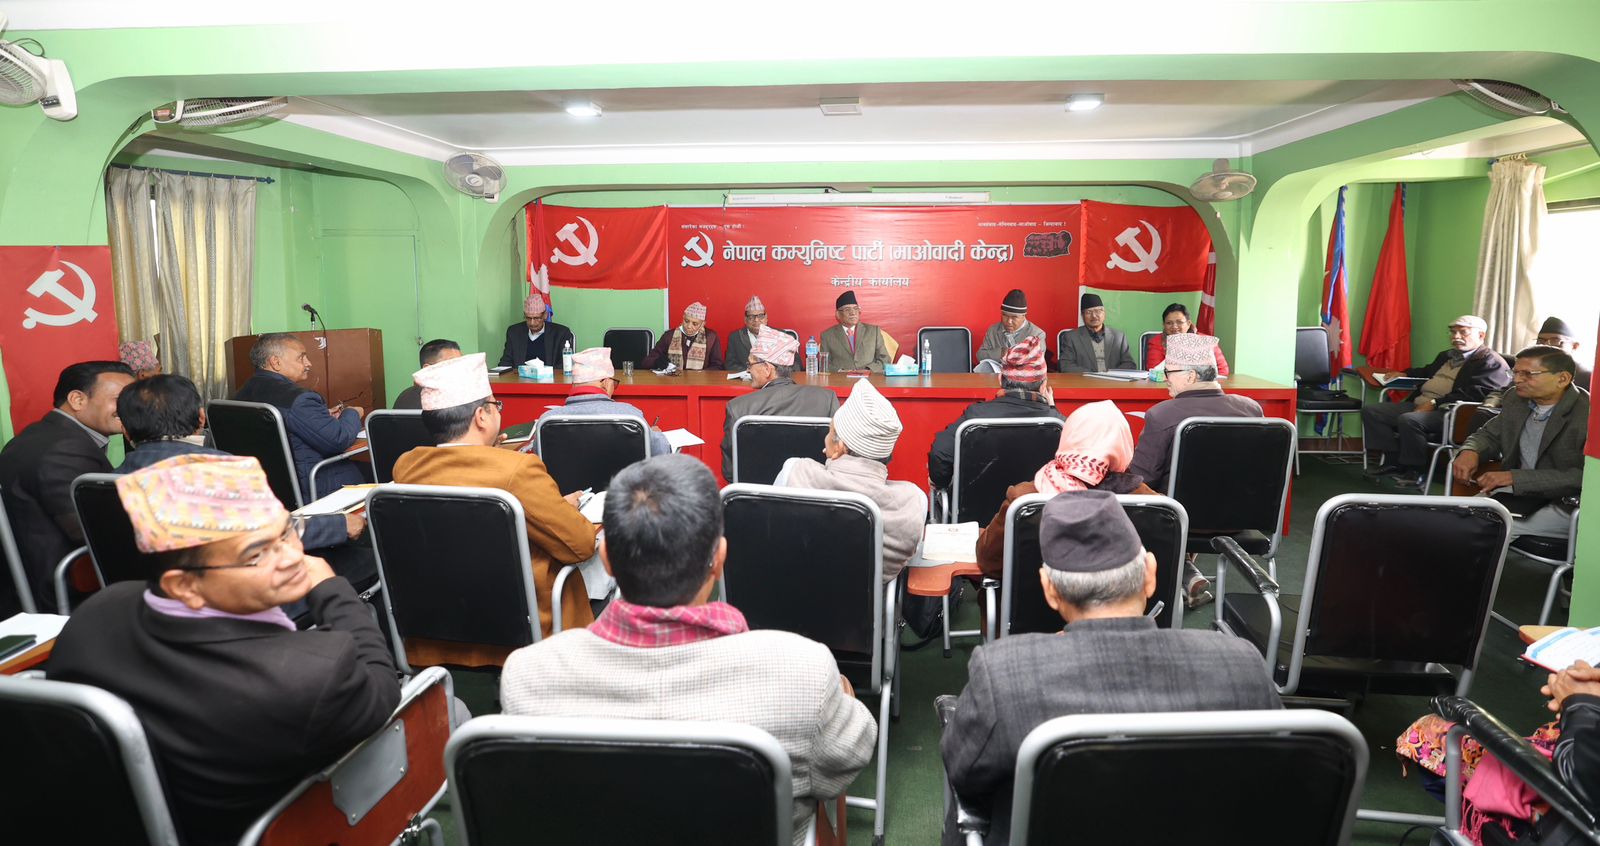 माओवादी केन्द्रकाे केन्द्रीय समिति बैठक : सदस्यहरूले धारण राख्ने क्रम जारी